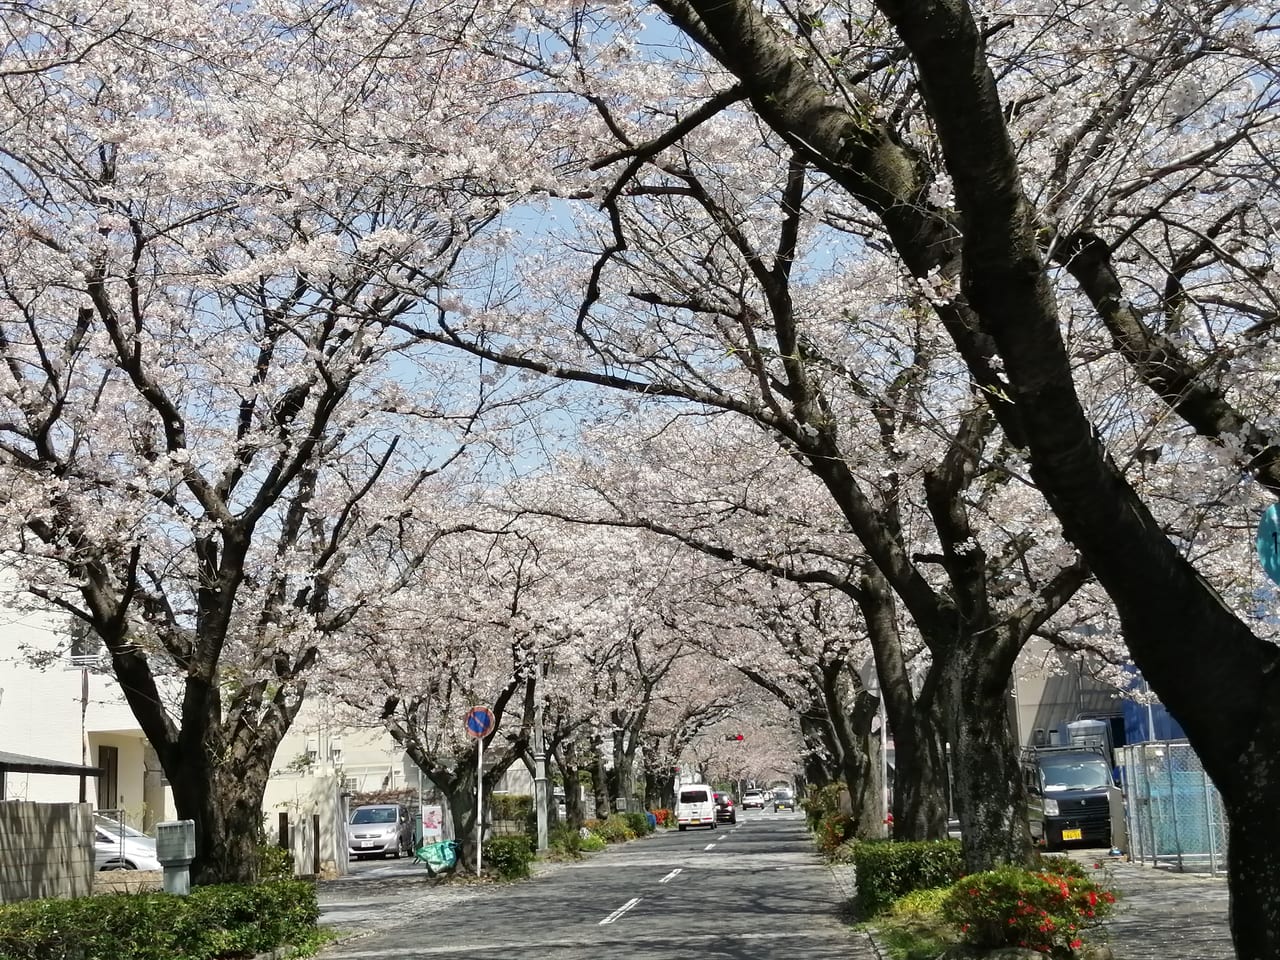 周南 下松 周南 下松の桜スポットを見てきました 週末は桜が見頃を迎えそうです 号外net 周南市 下松市 光市